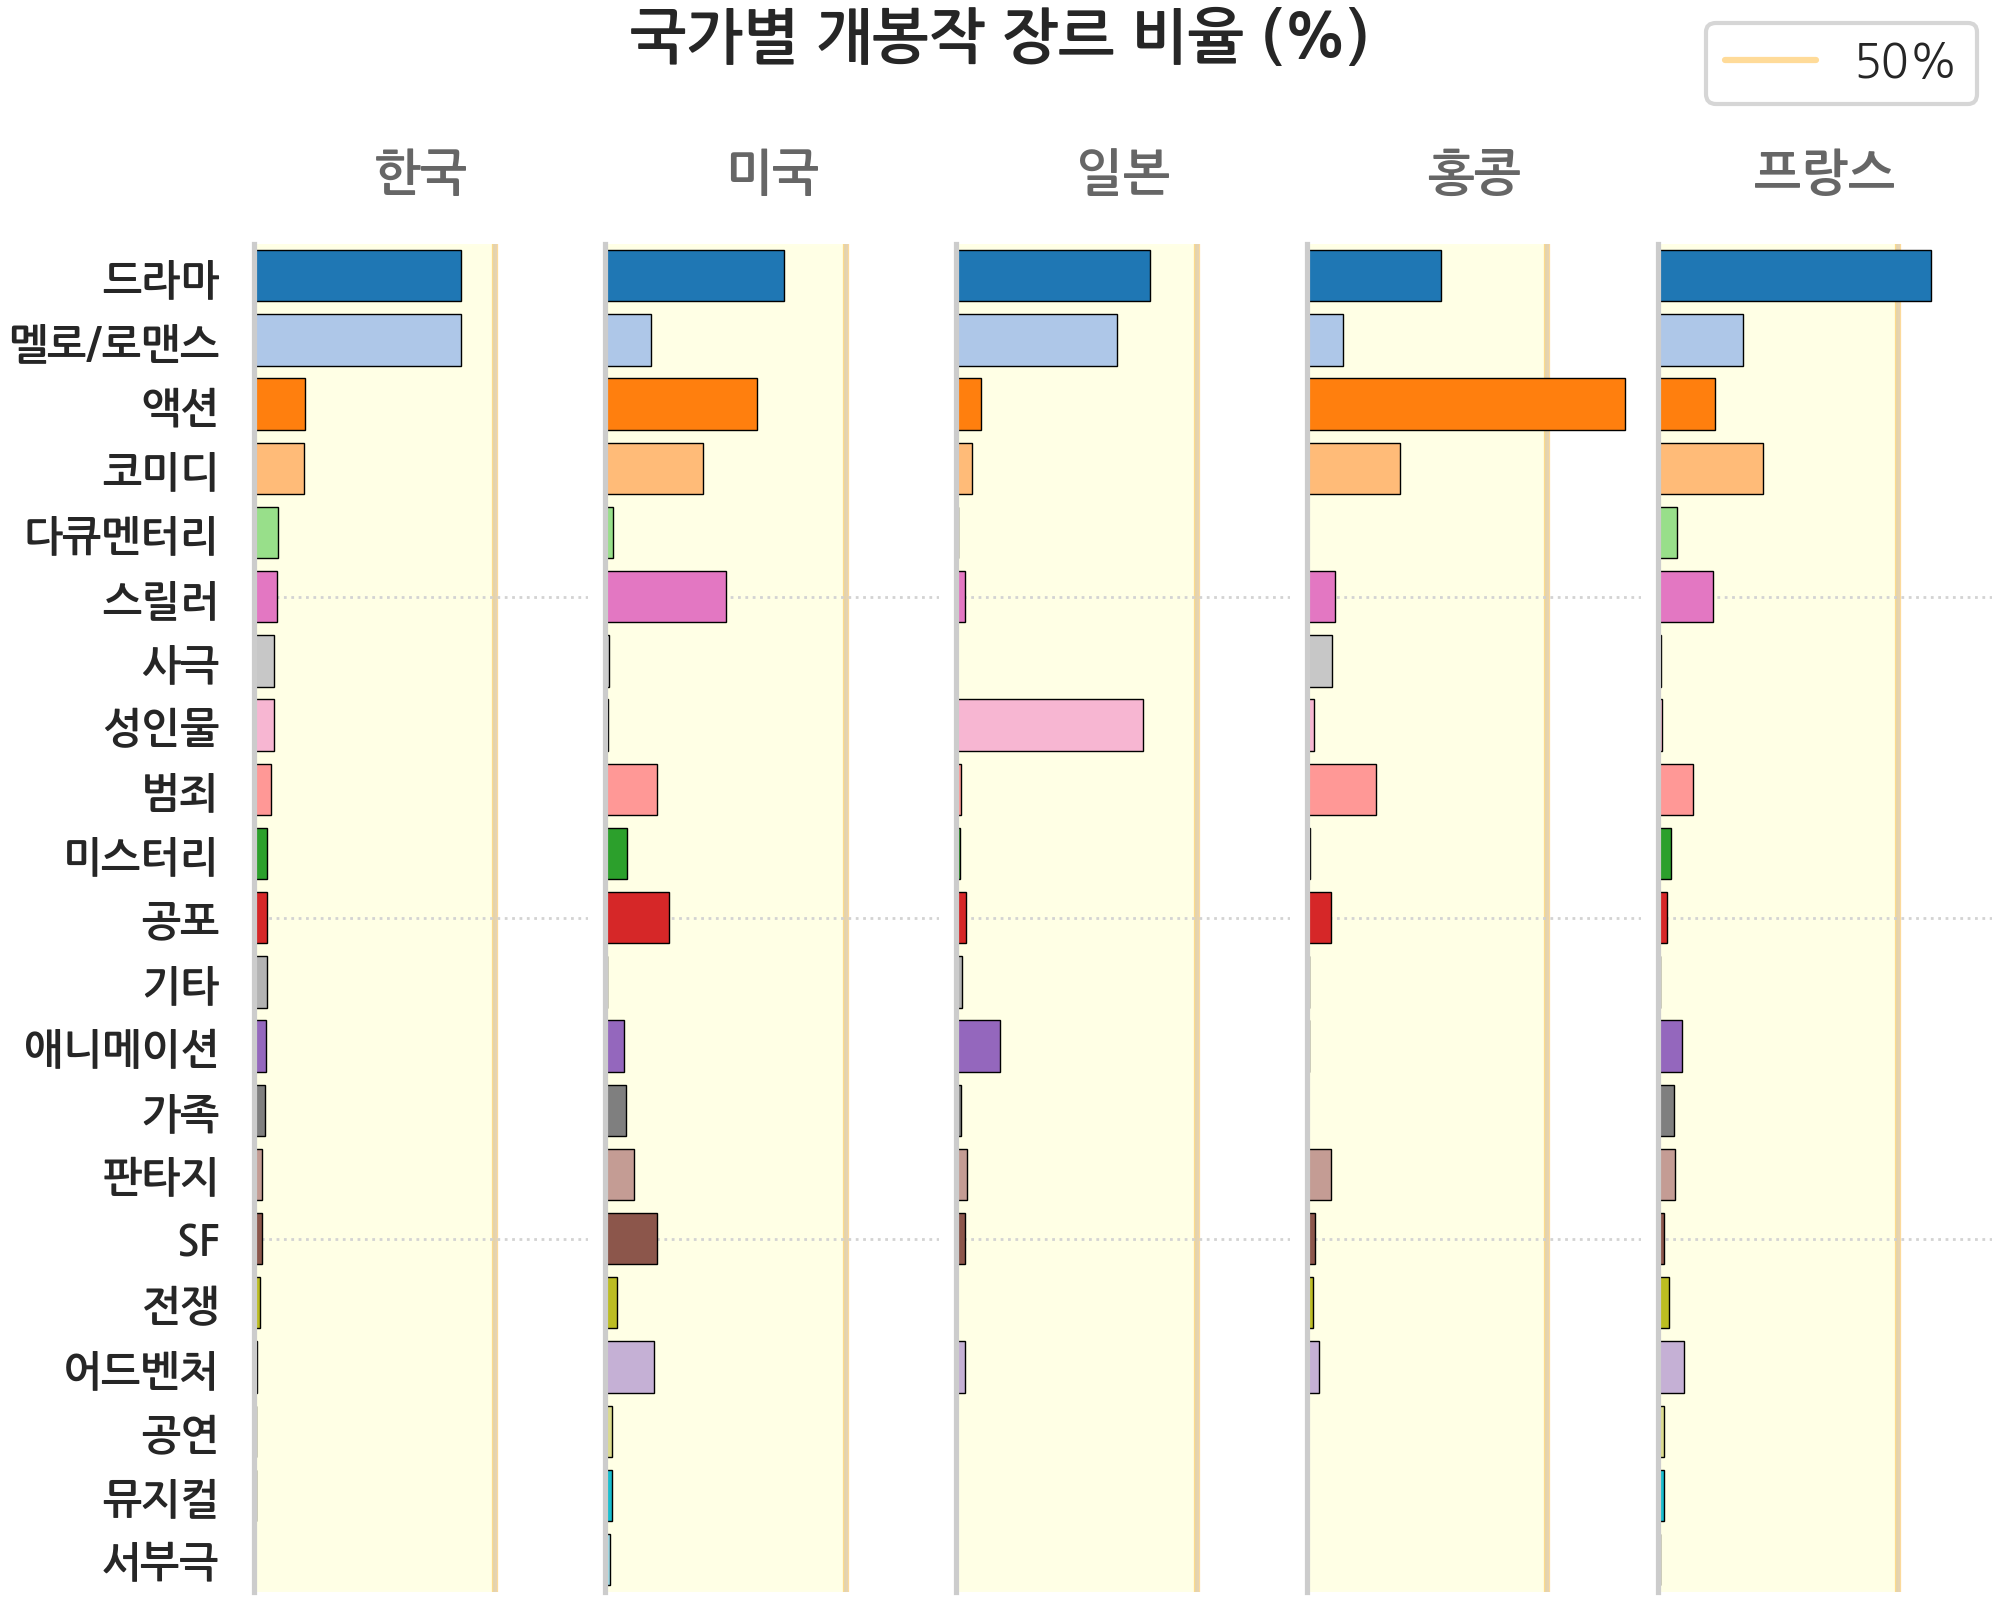 한국영화와 해외영화 장르별로 년도에 따른 비중을 나타낸 이미지